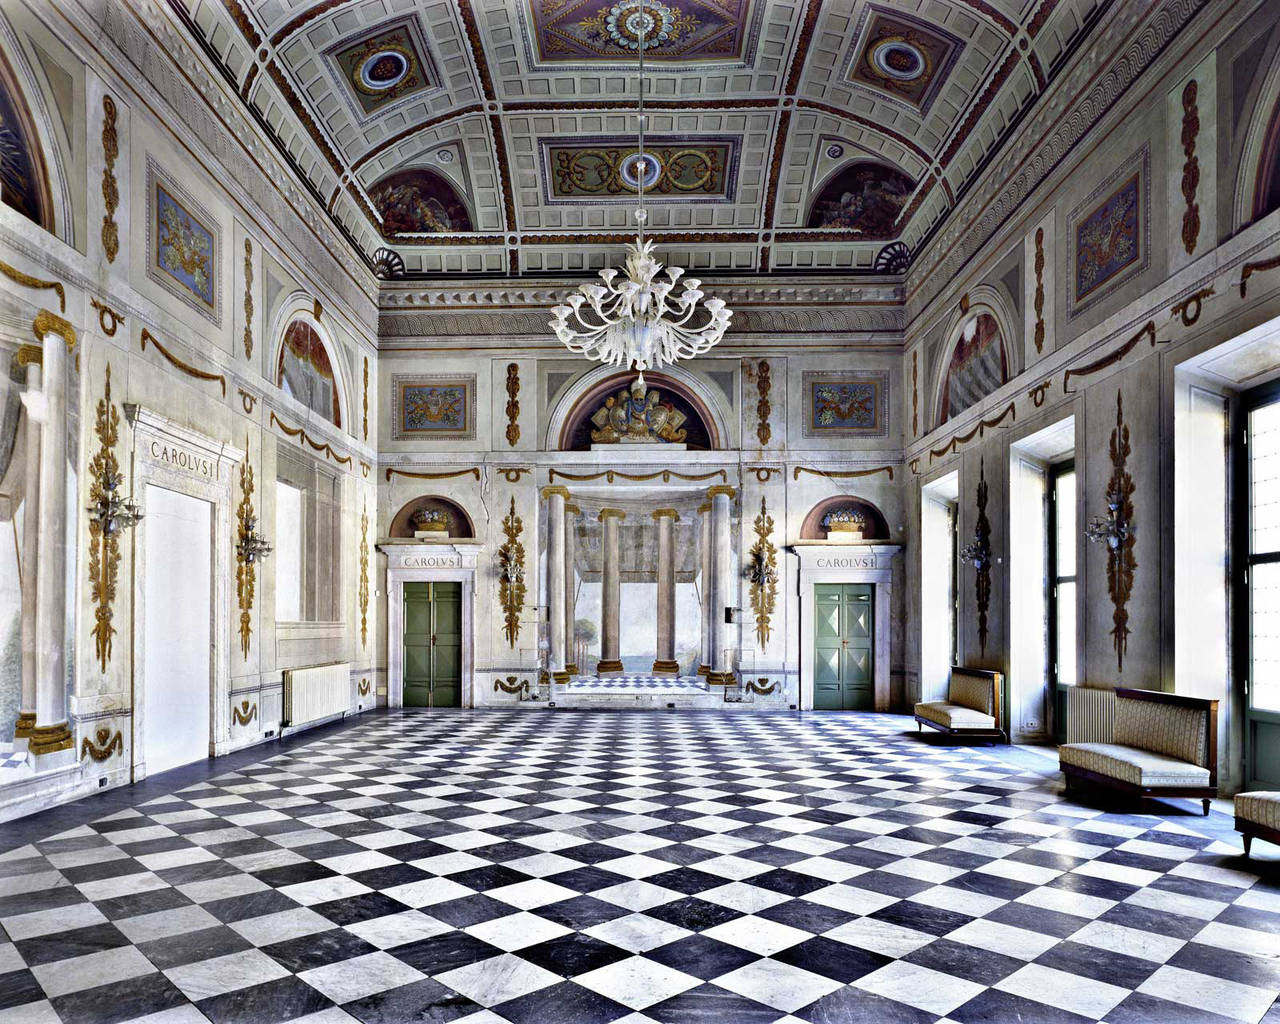 Palazzo Ducale di Massa
2016
C-print
120 x 150 cm ungerahmt
Auflage von 5
Verso auf dem Label signiert und nummeriert. 

Der in Florenz lebende Fotograf ist fasziniert davon, wie er mit seinen architektonischen Motiven die Komposition seines Bildes